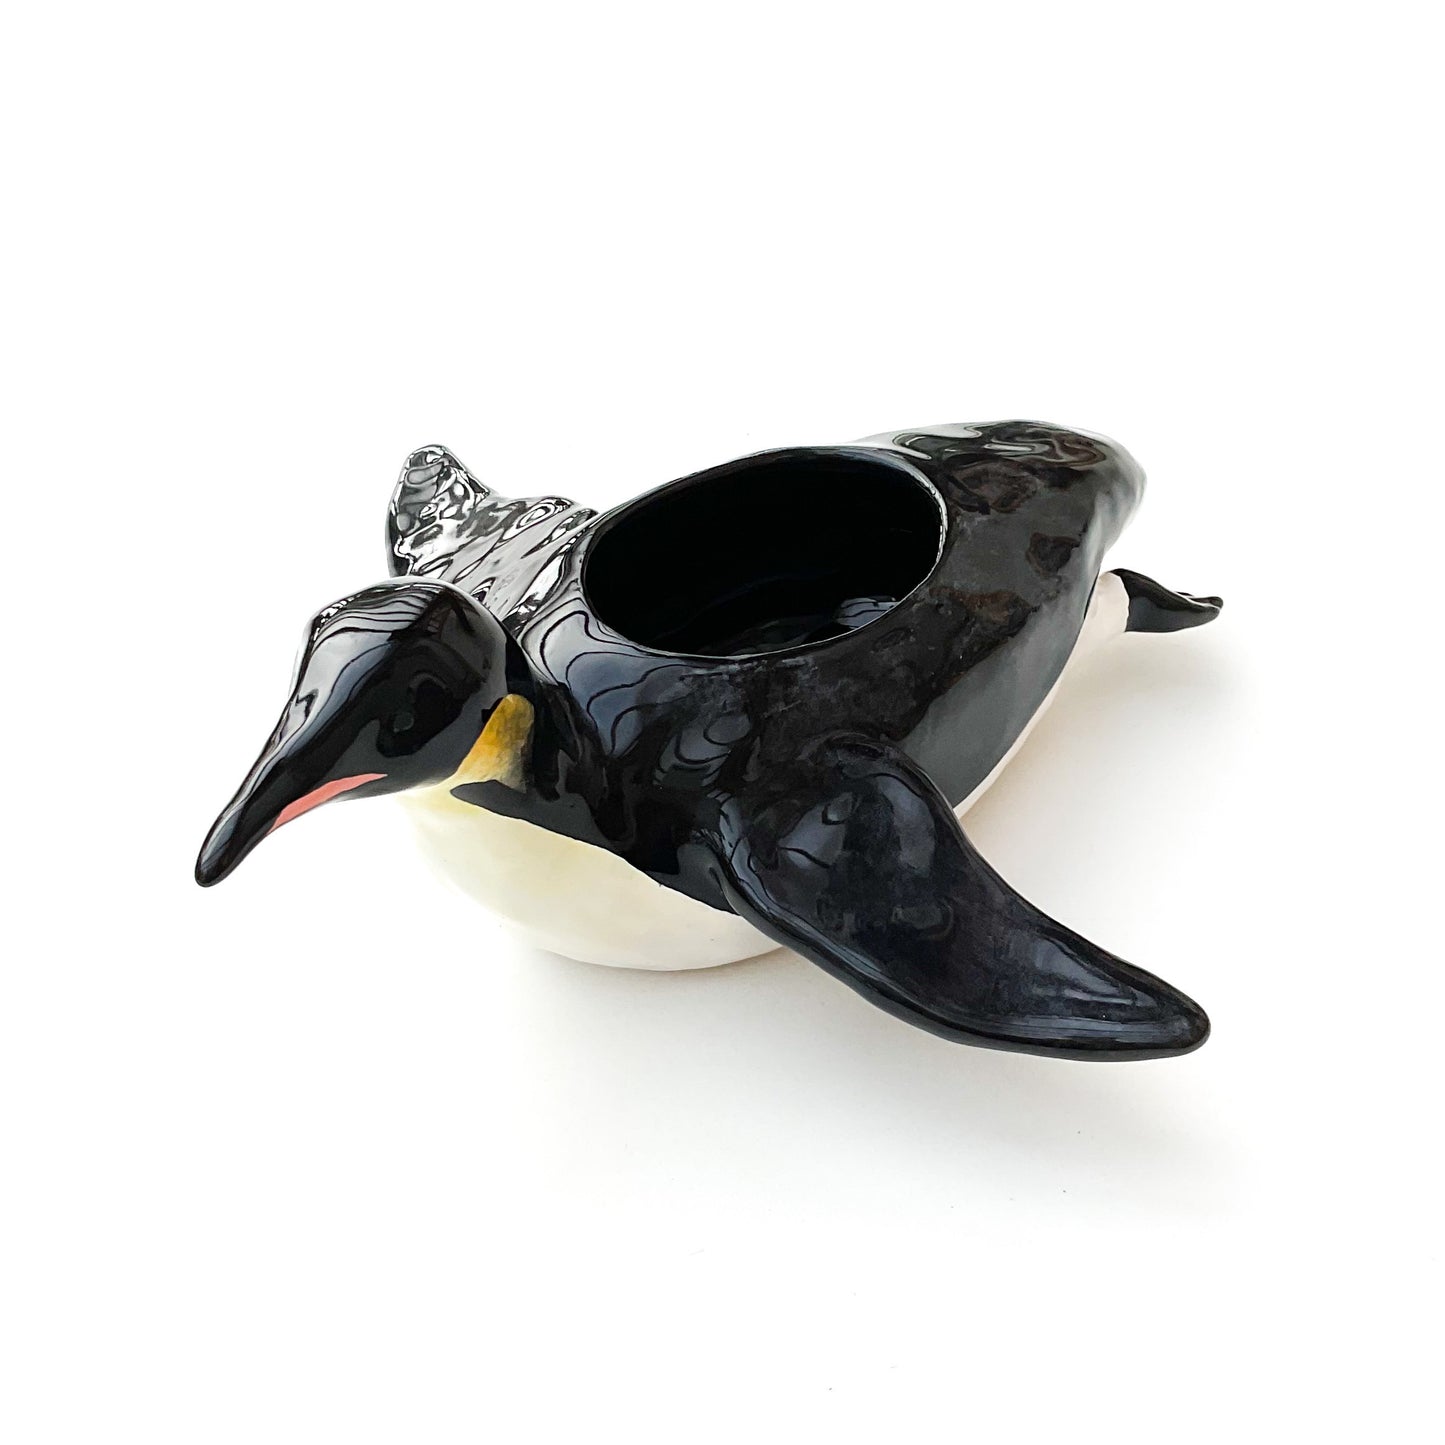 Emperor Penguin Pot - Ceramic Penguin Planter